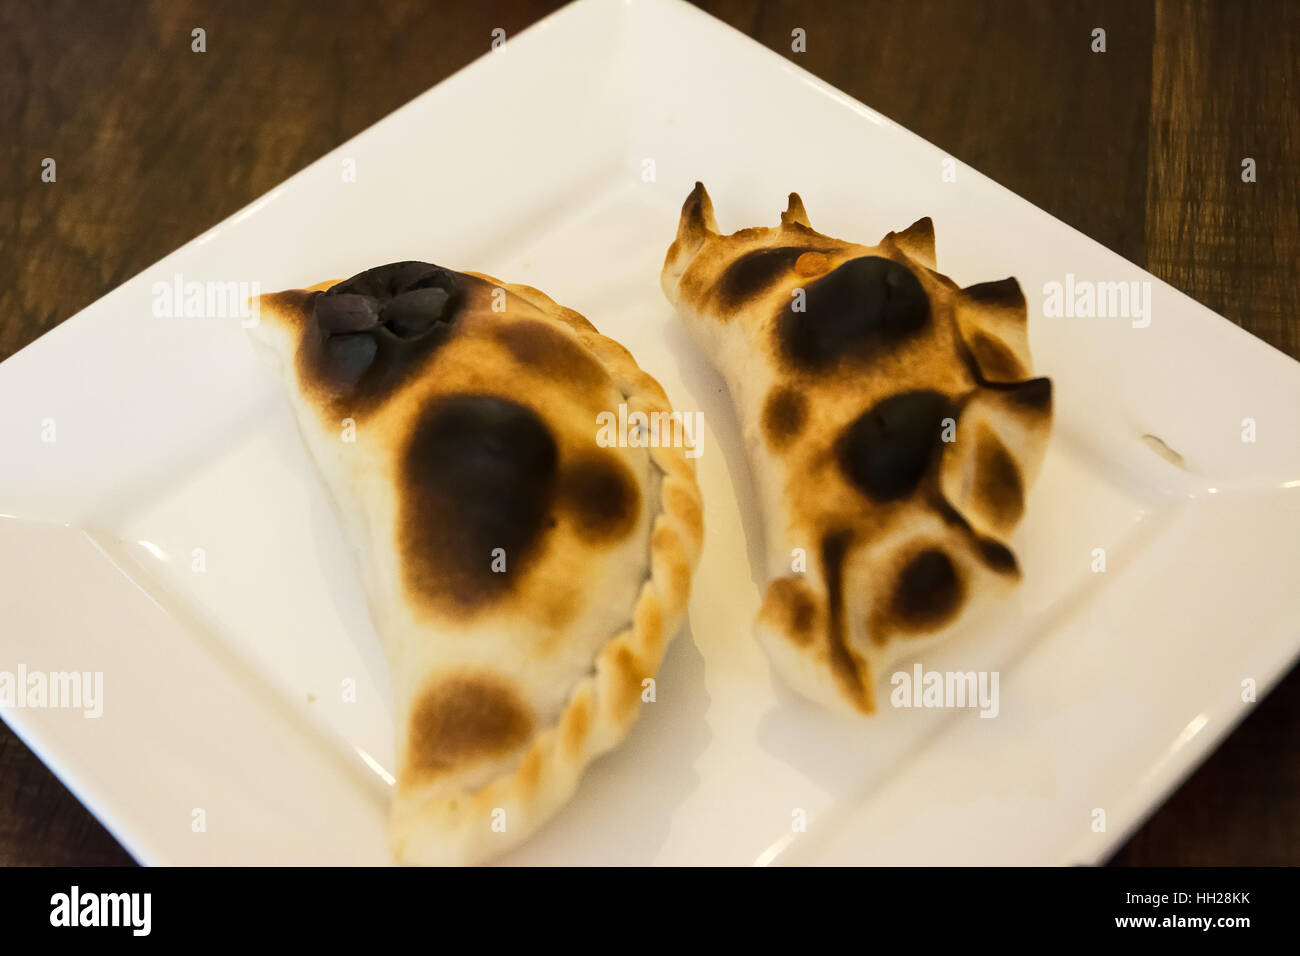 Argentinian empanadas on white dish Stock Photo